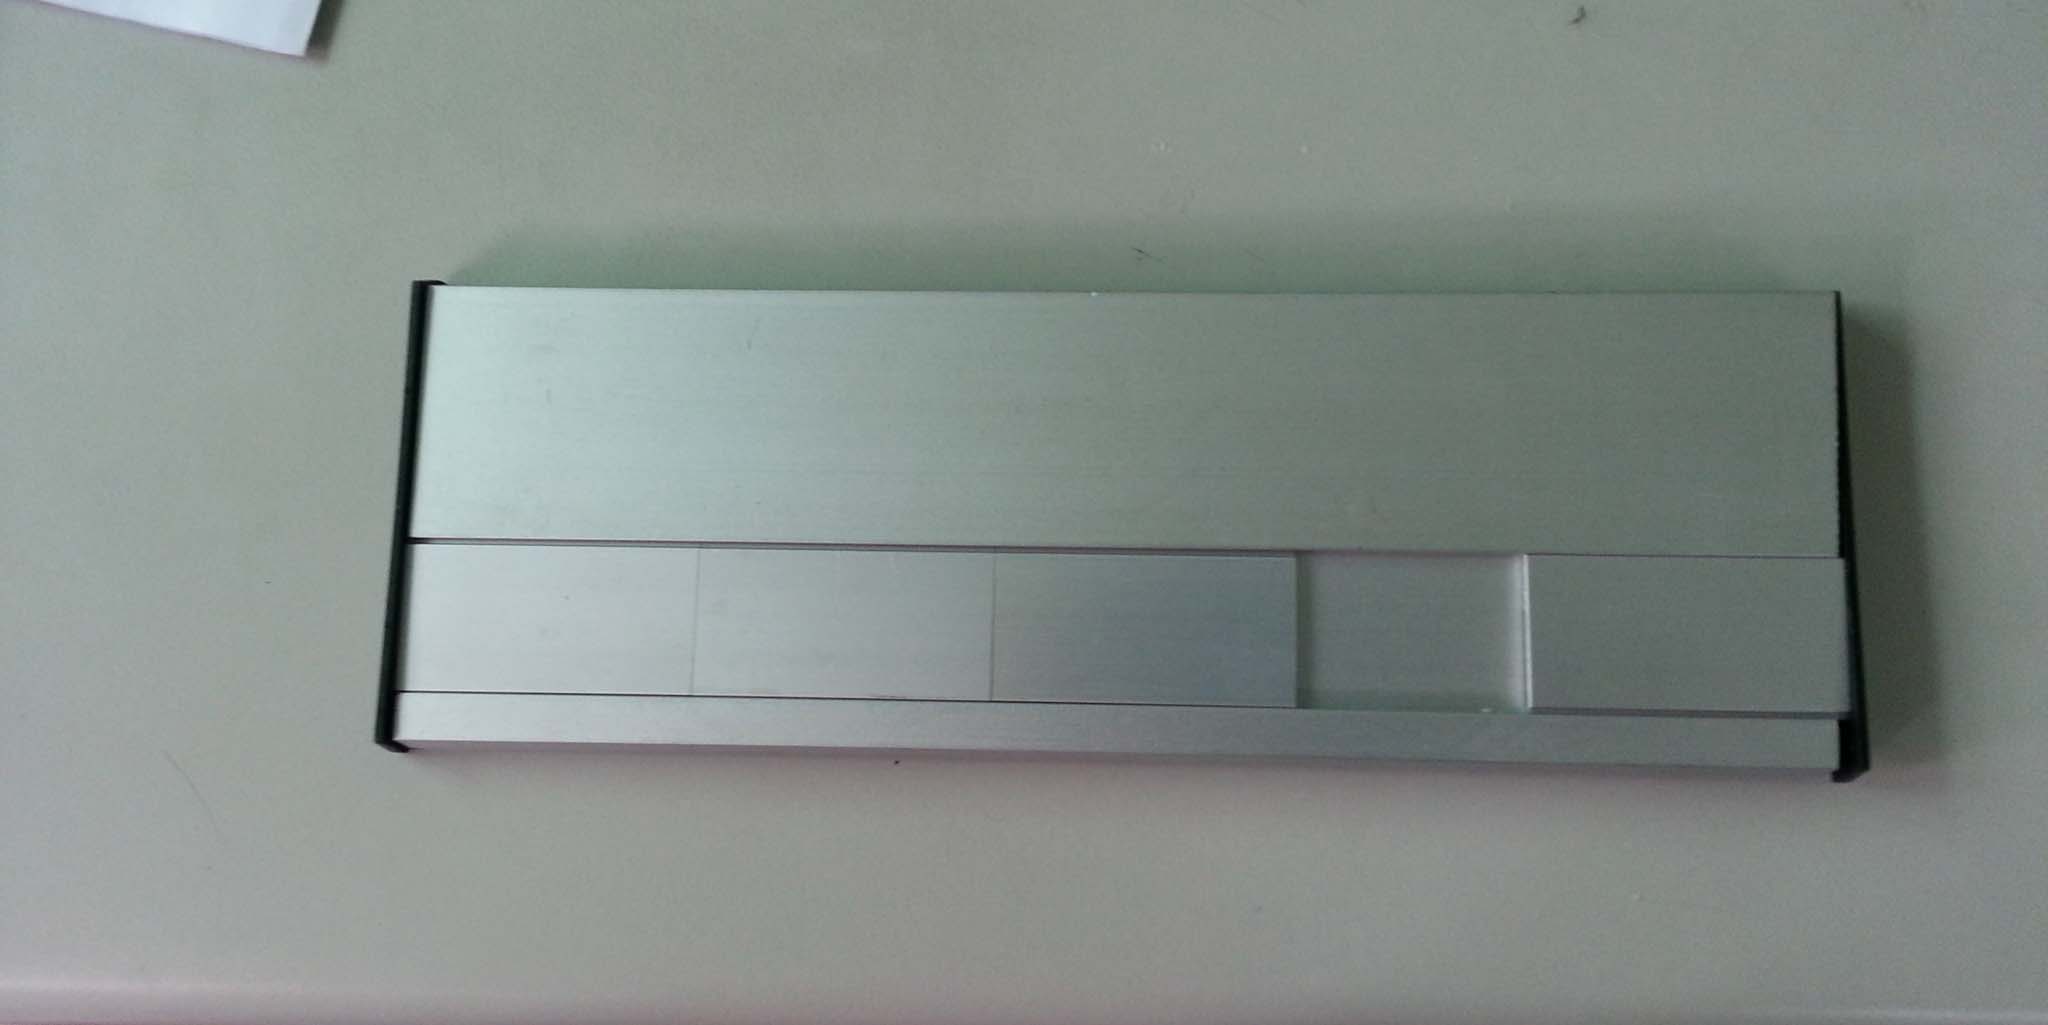 單位牌-平面板+軌道鋁合金圖示8x25cm